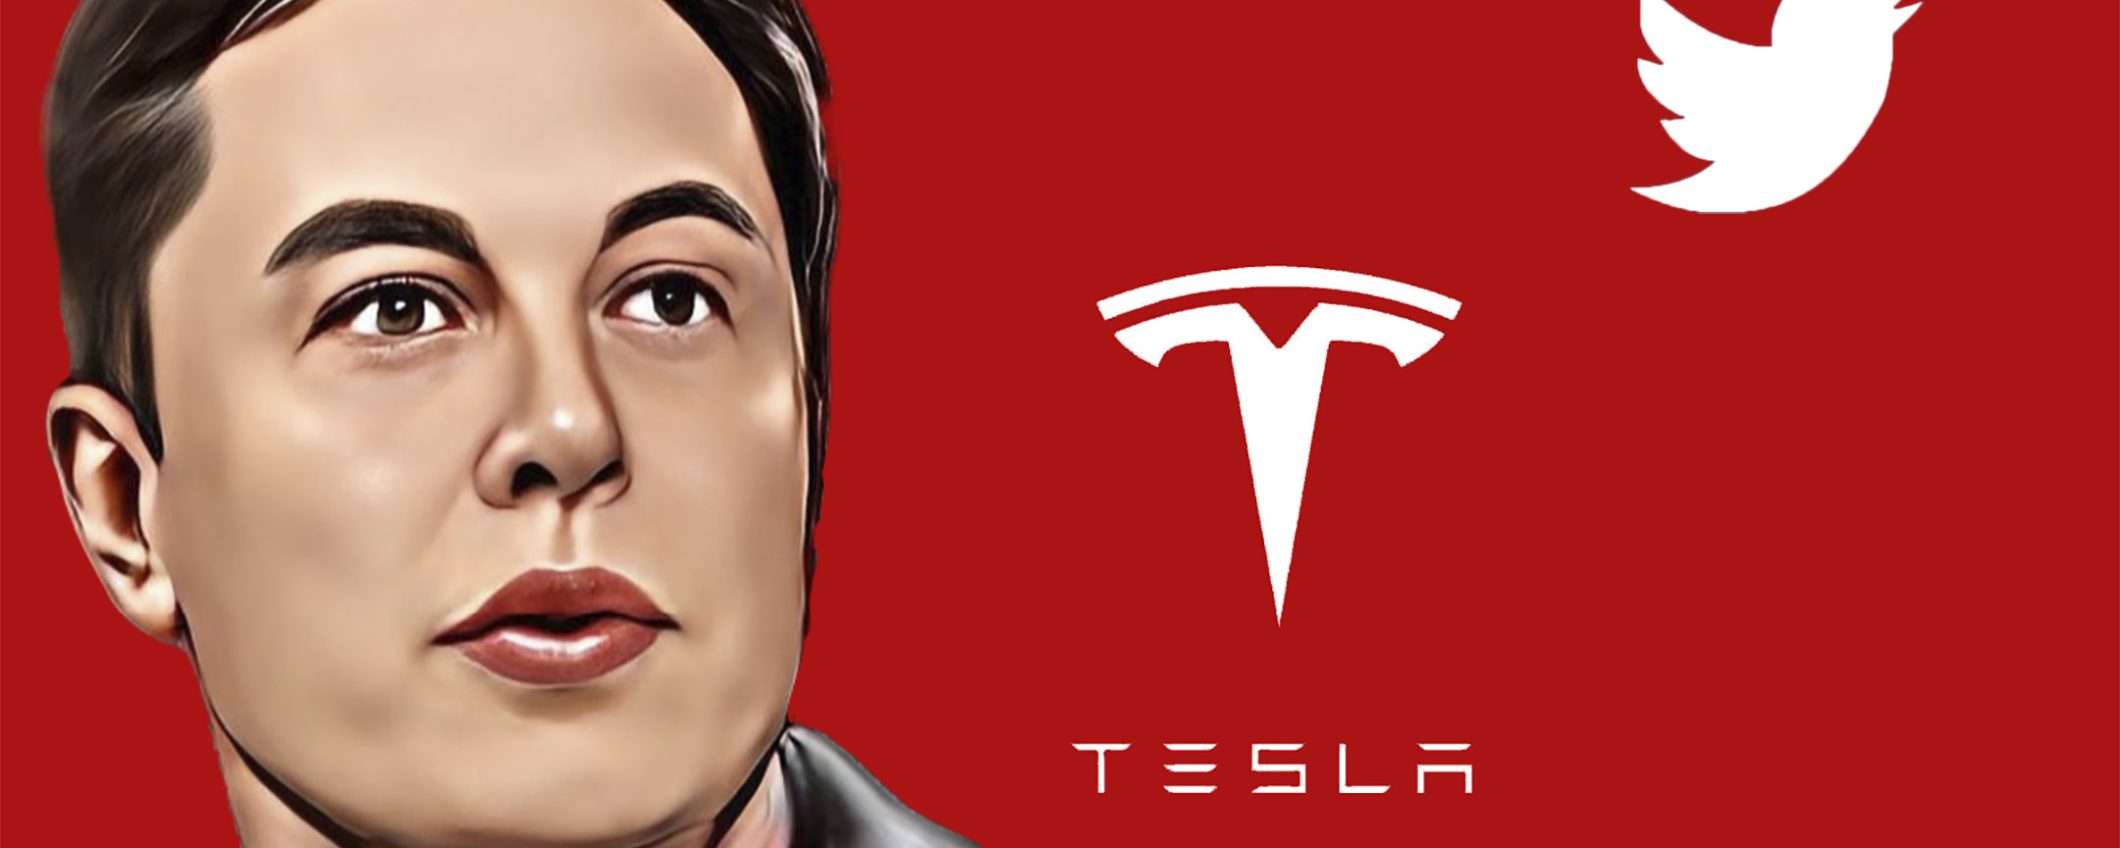 Elon Musk vende le azioni di Tesla per 7 miliardi di dollari. Cosa succede?